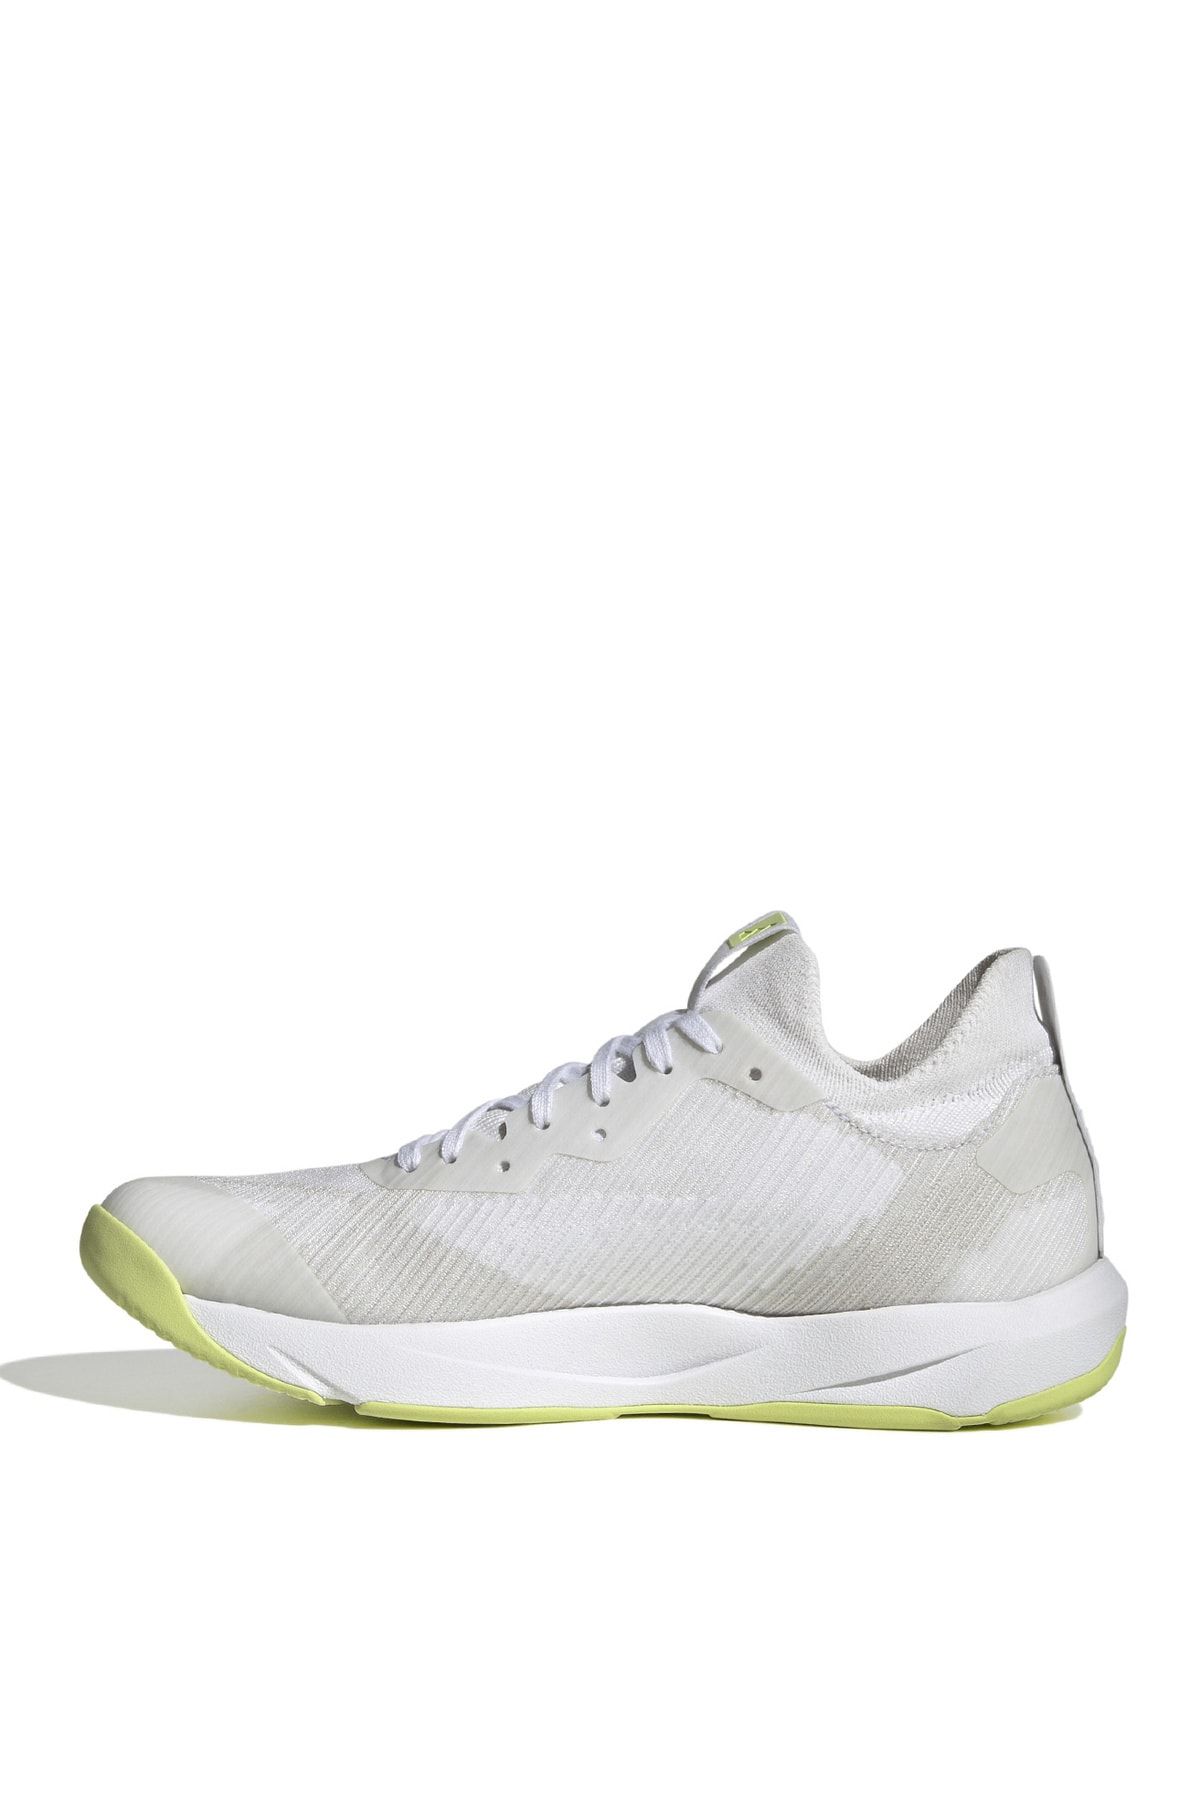 adidas Training Ayakkabısı, 36.5, Beyaz